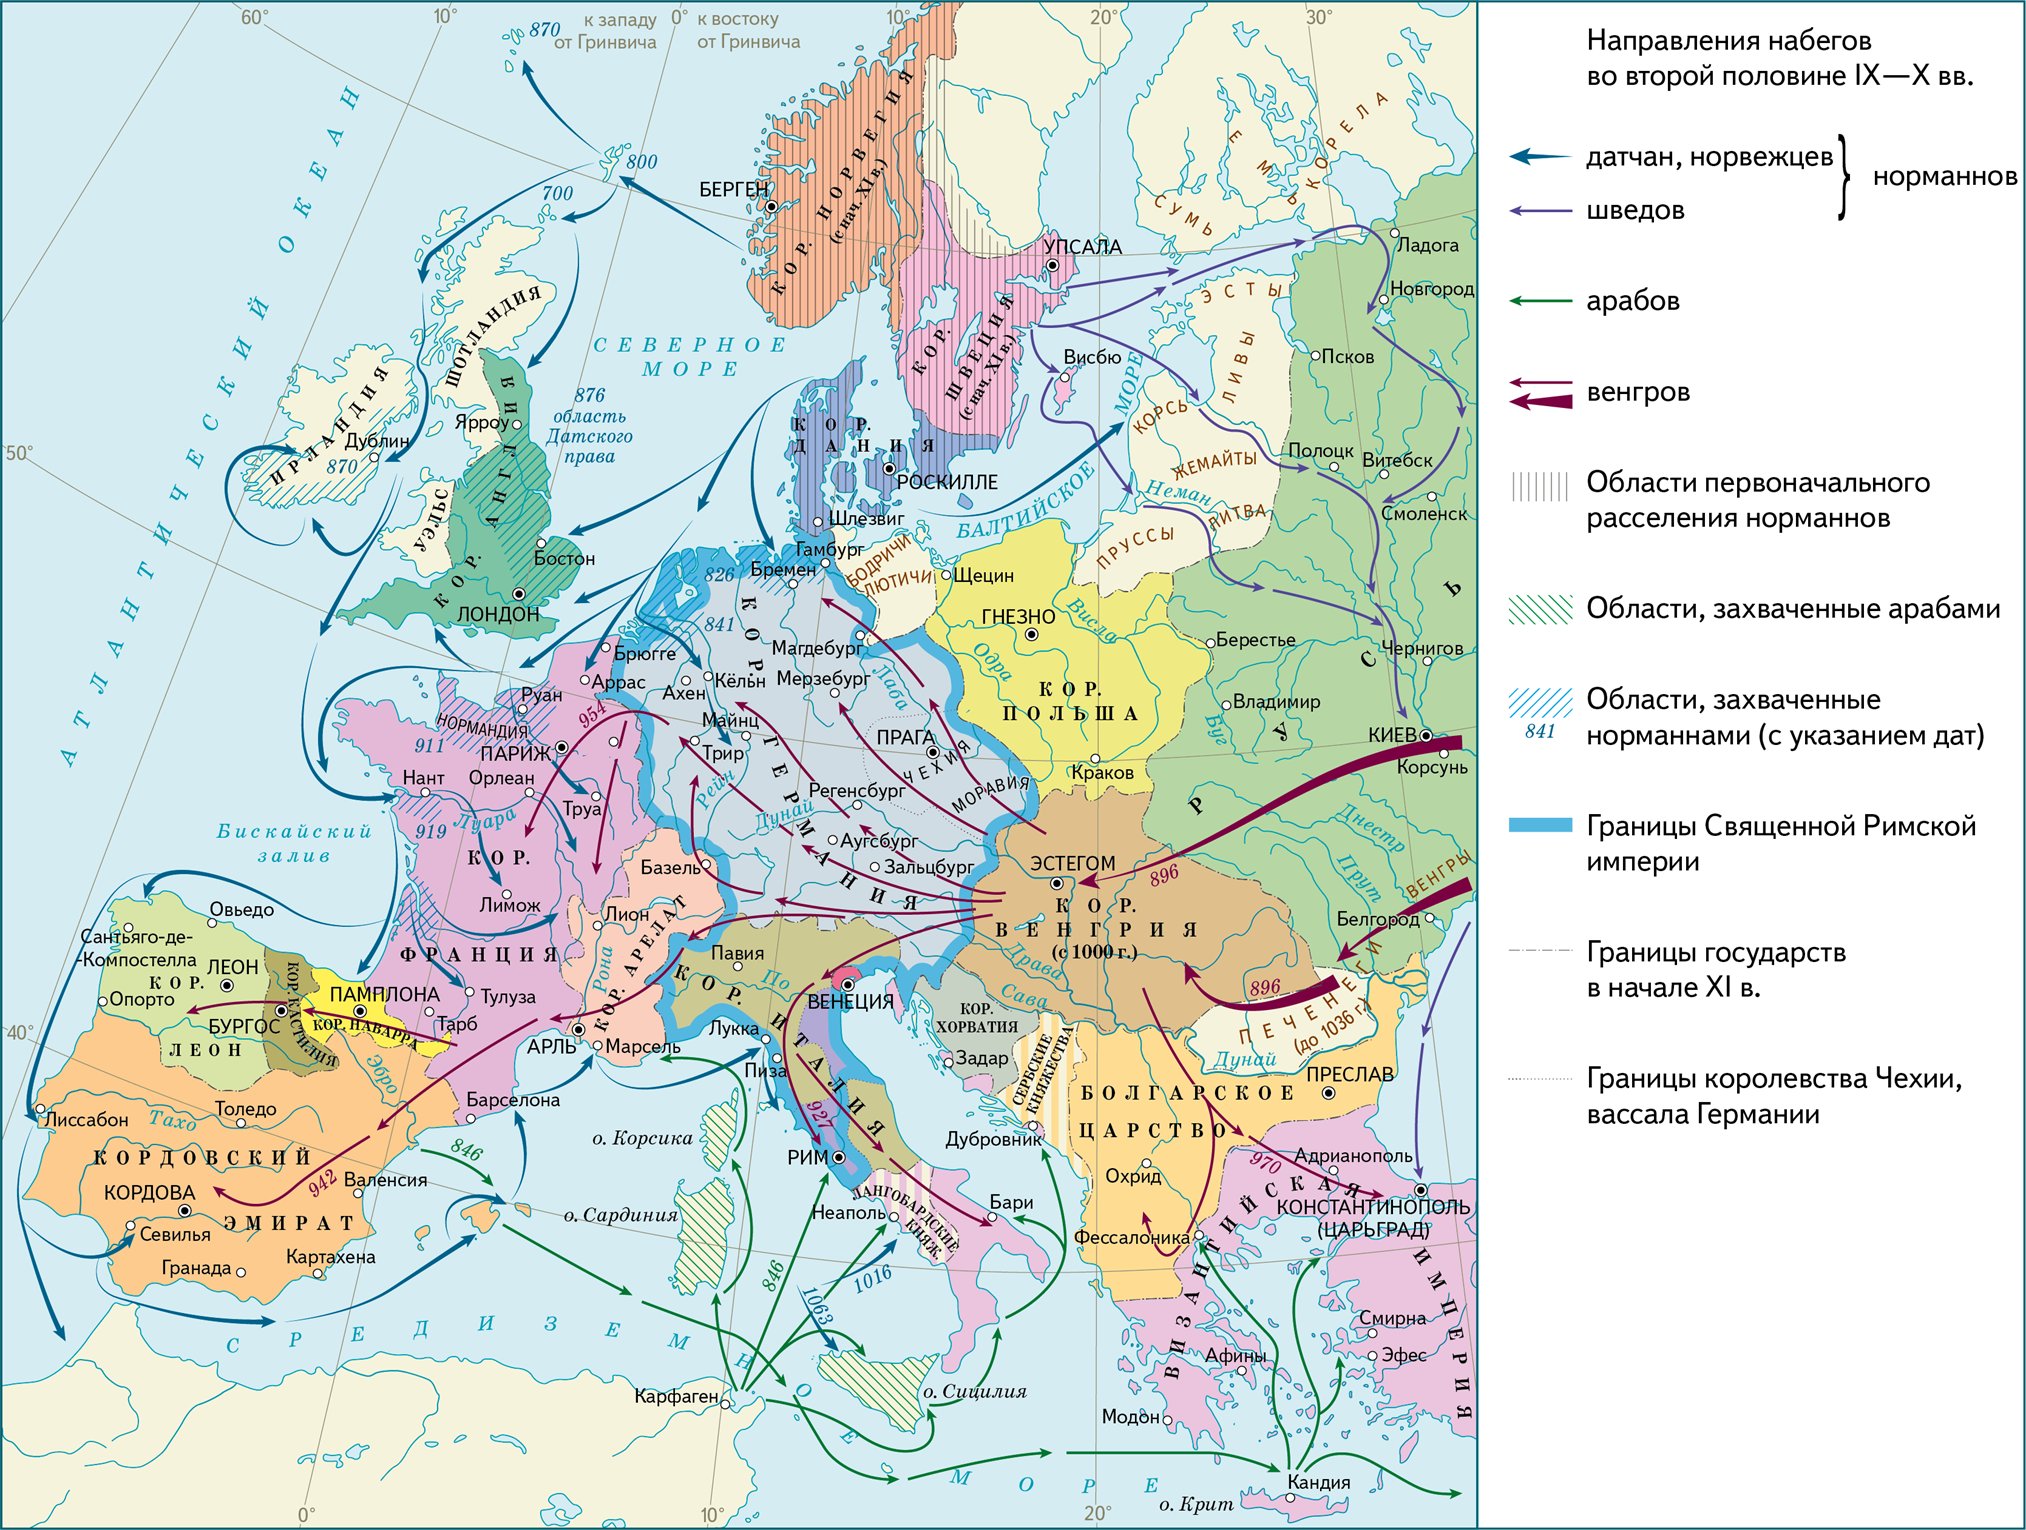 Феодальная европа век 9 11. Завоевание норманнов в Европе 9-11 века. Завоевания норманнов в Европе в 9-11 веках карта. Карта завоевания норманнов и венгров в Европе в 9-11 веках. Карта завоевания норманнов и венгров в Европе.